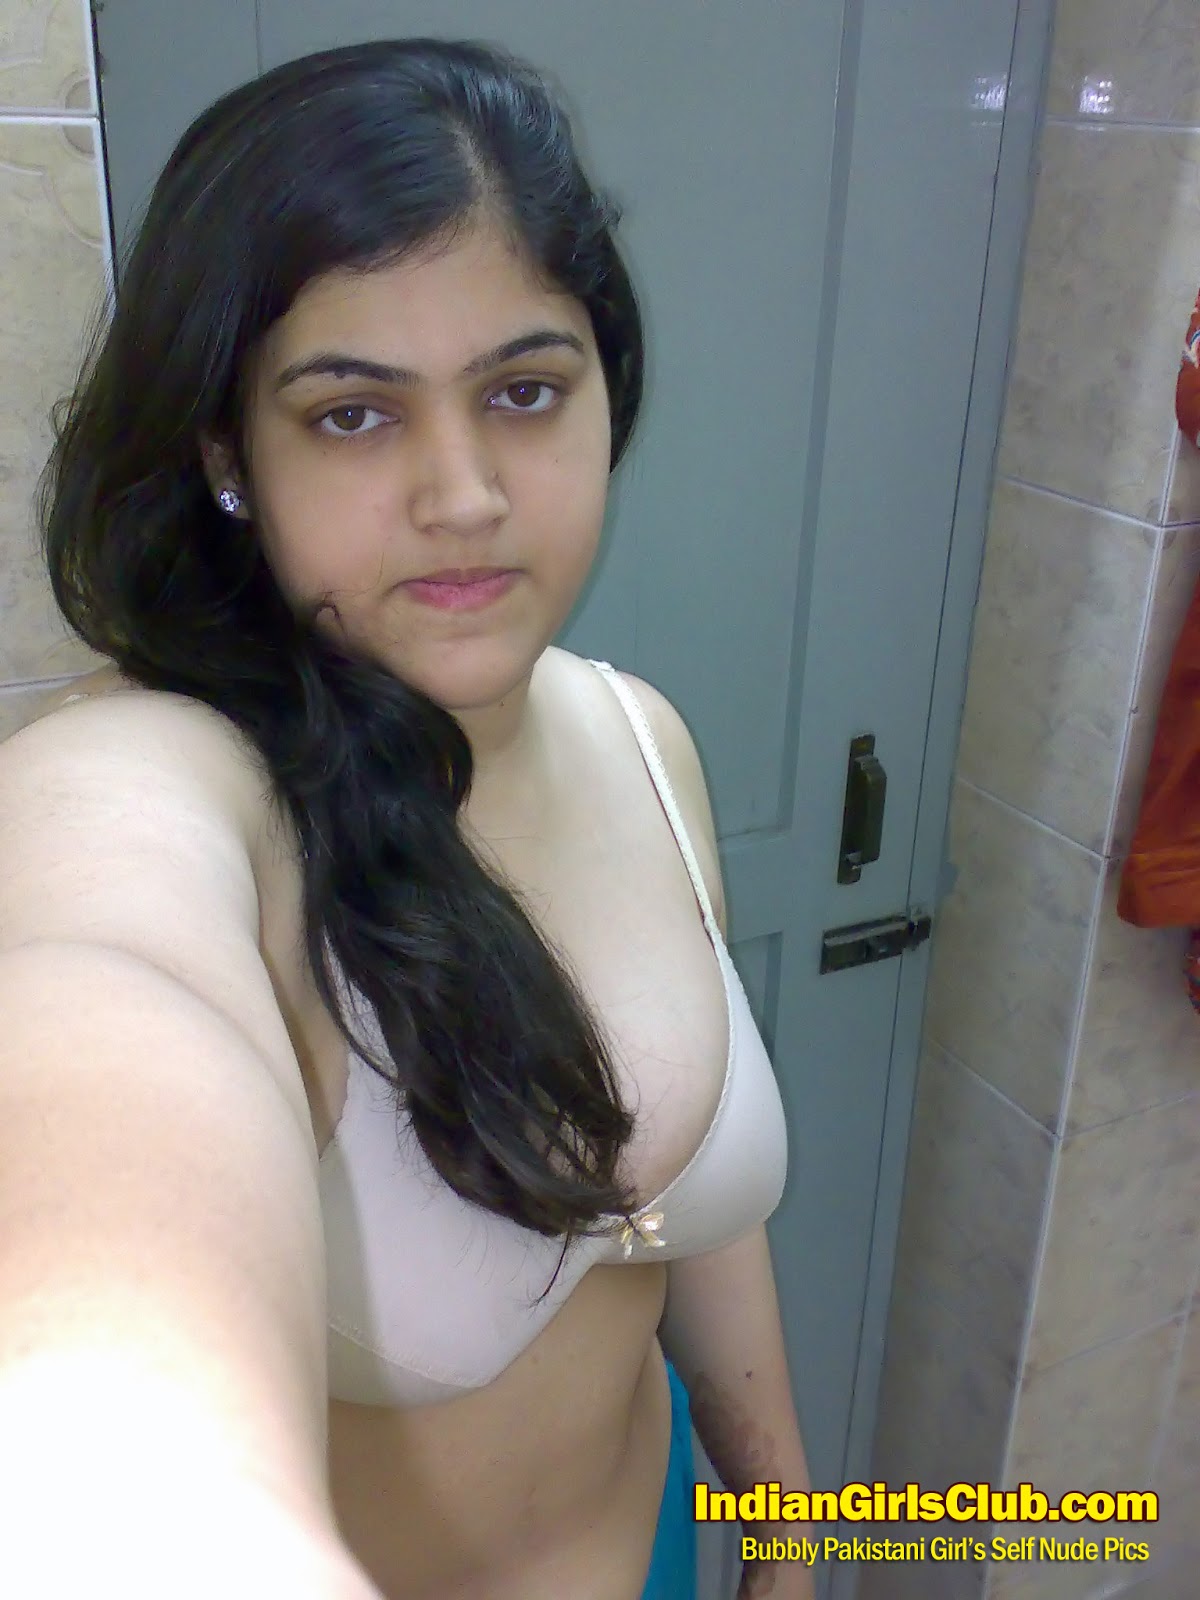 Deshi wife sexy photos